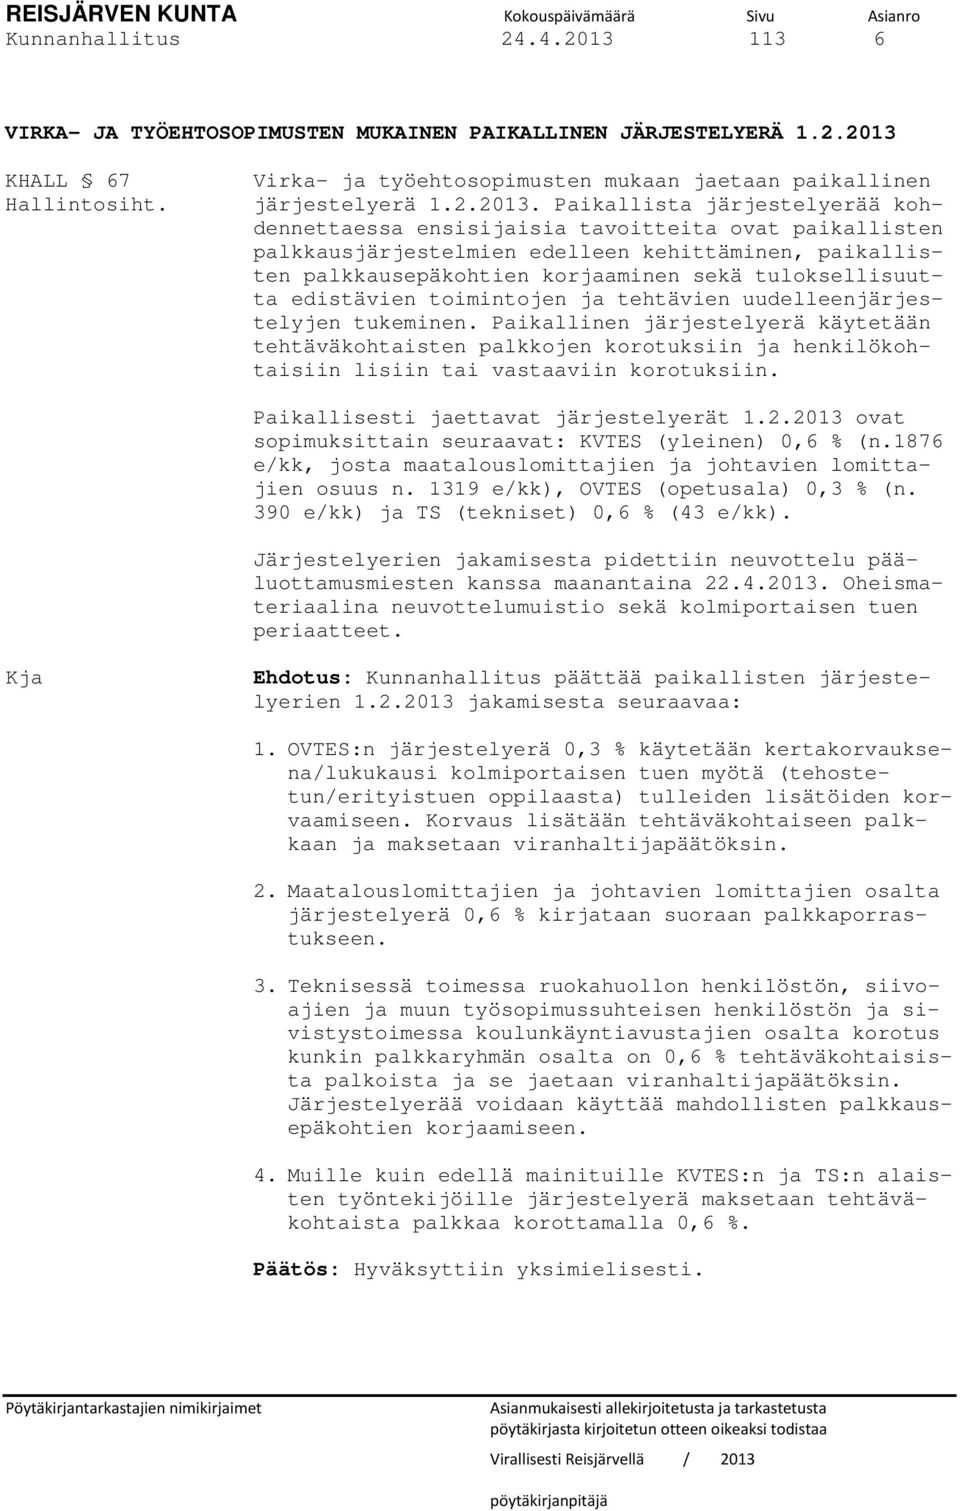 KHALL 67 Hallintosiht. Virka- ja työehtosopimusten mukaan jaetaan paikallinen järjestelyerä 1.2.2013.